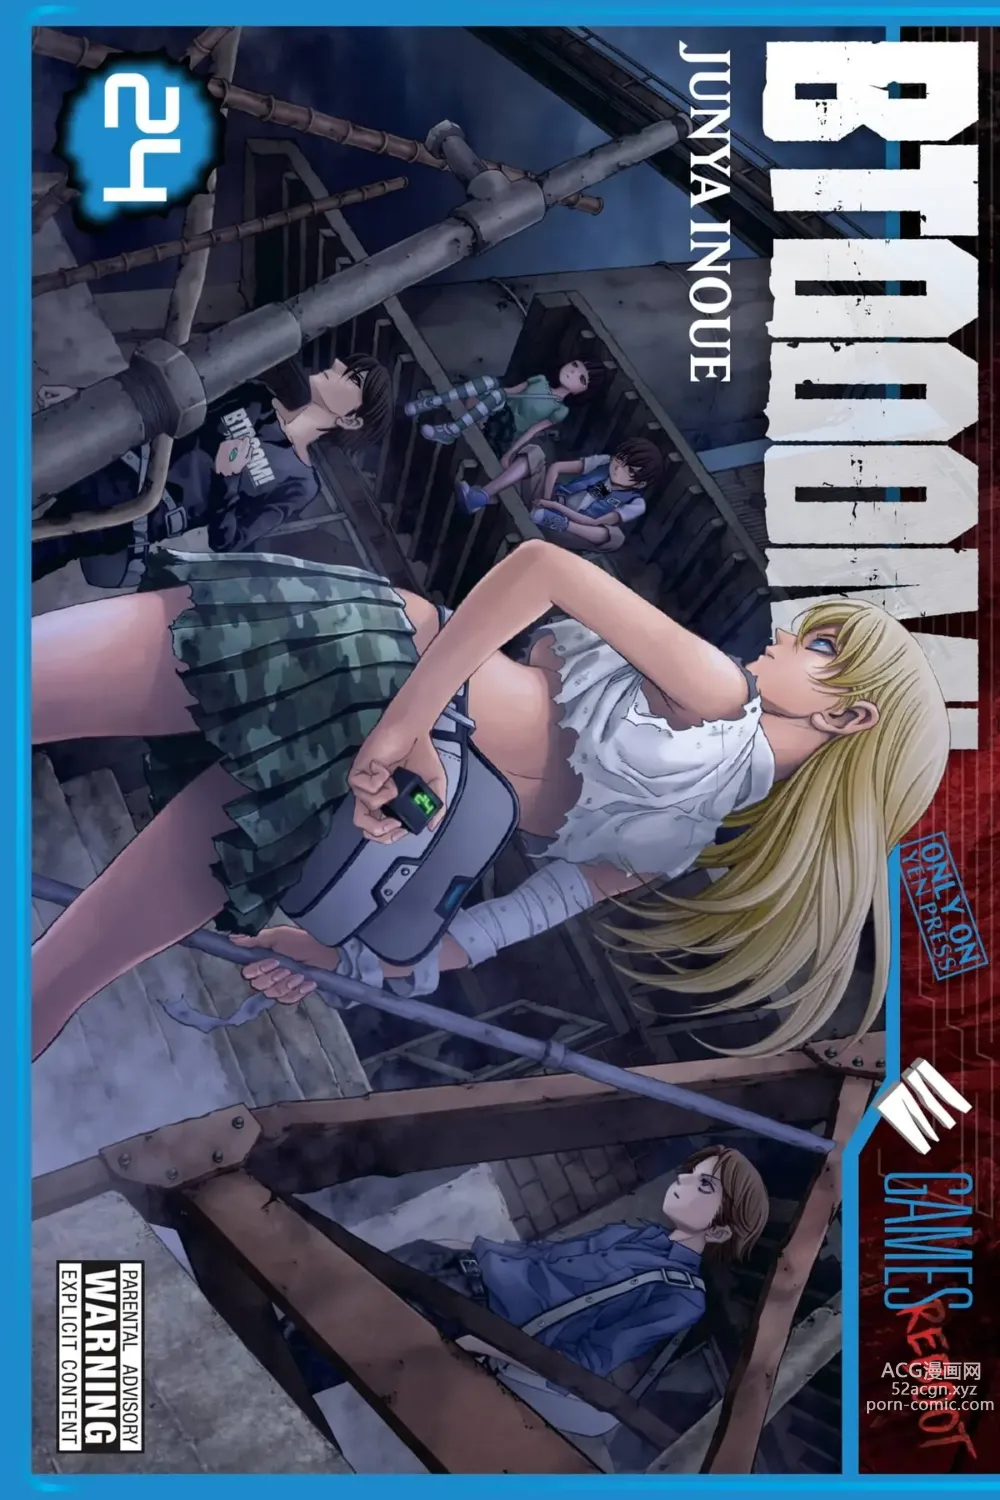 Page 24 of imageset Btooom! Manga Cover